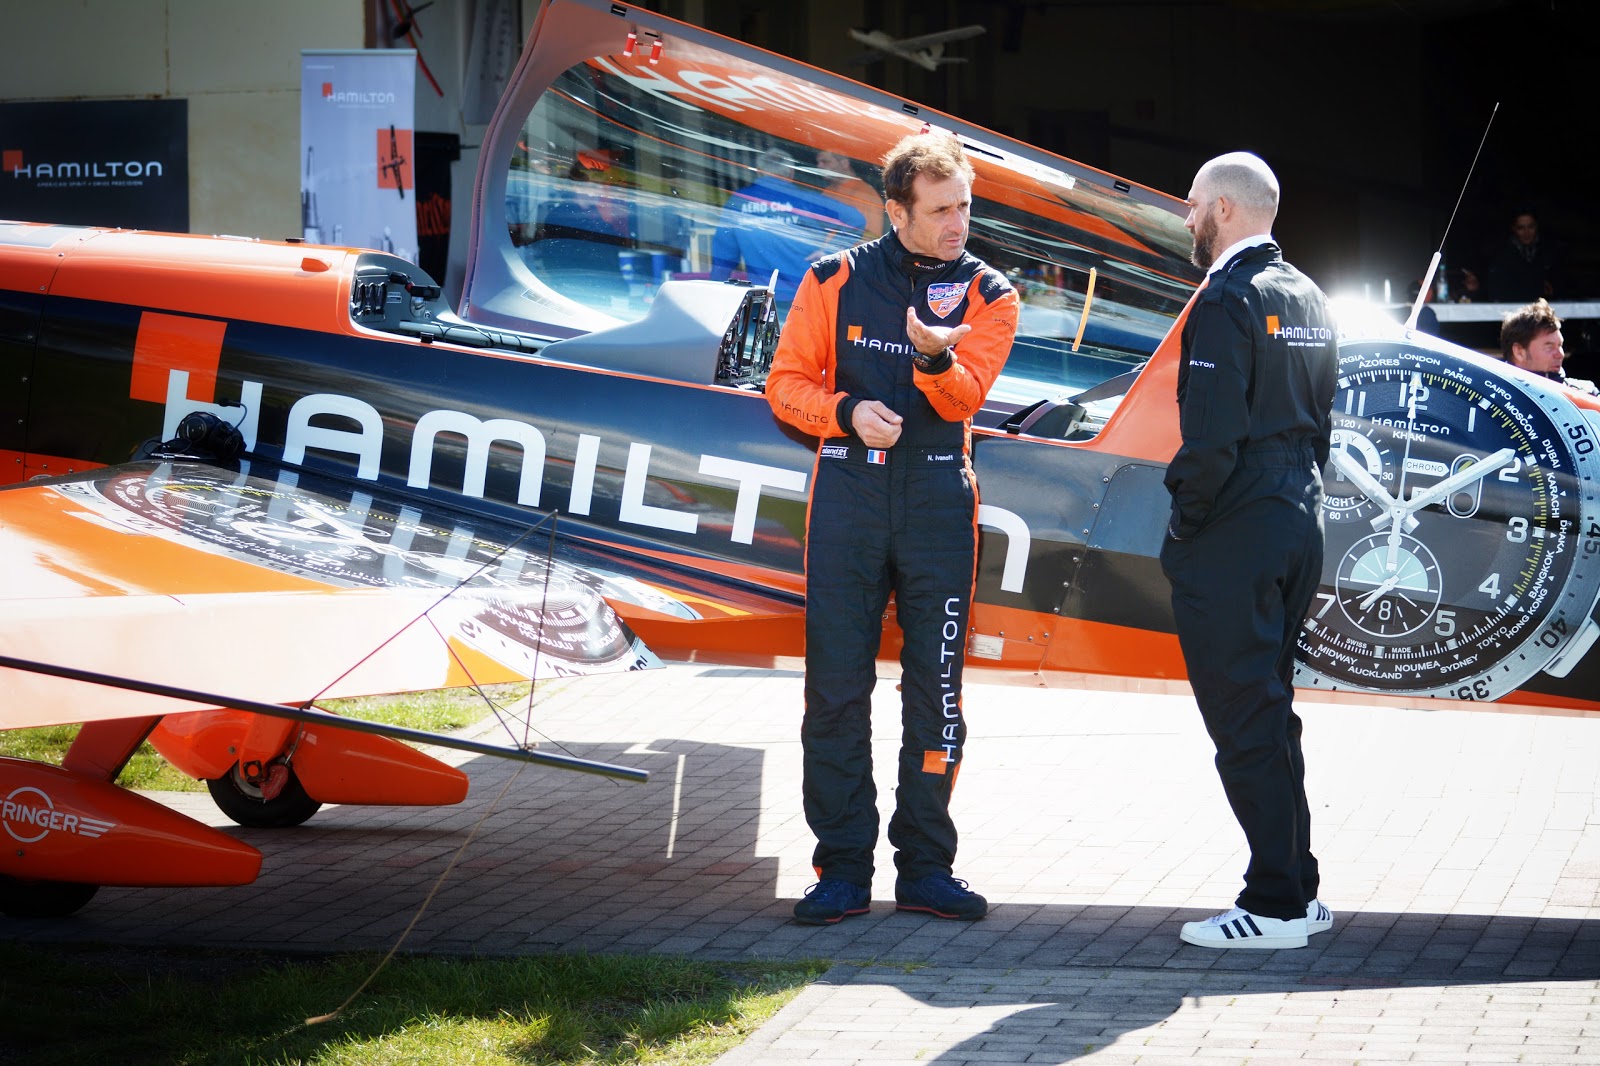 Nicolas Ivanov mit Jens Mahnke vor seinem Hamilton Kunstflugzeug vor einem Hangar - Zwei personen stehen vor einem Flugzeug und diskutieren